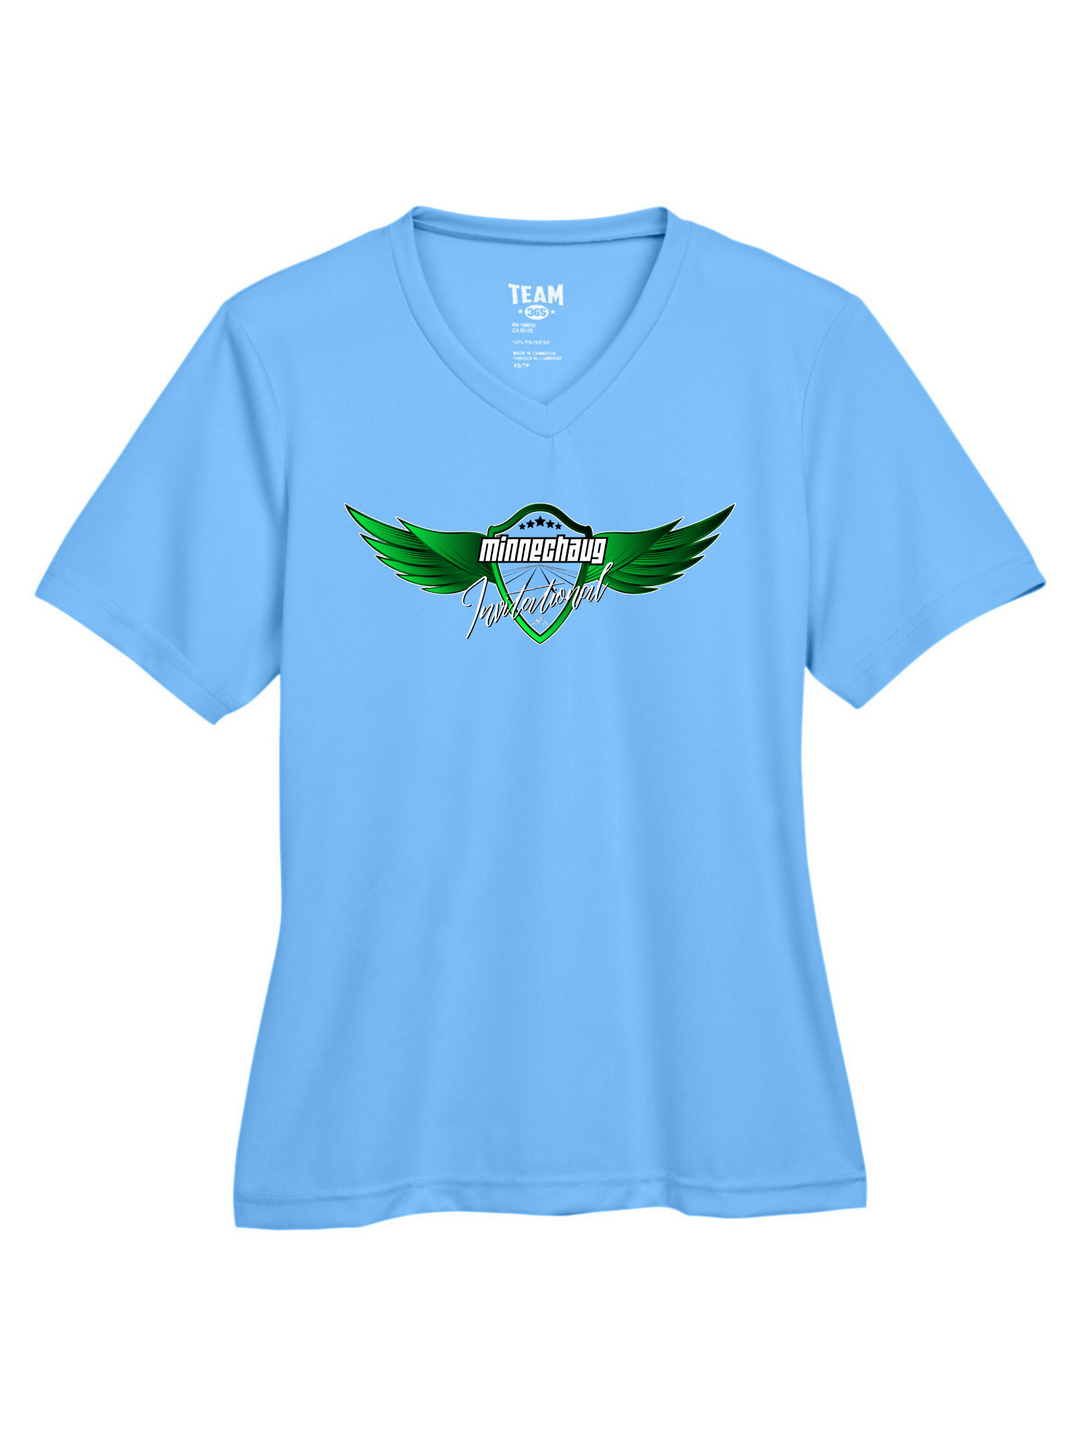 Minnechaug Invitational - Women's Performance T-Shirt (TT11W)